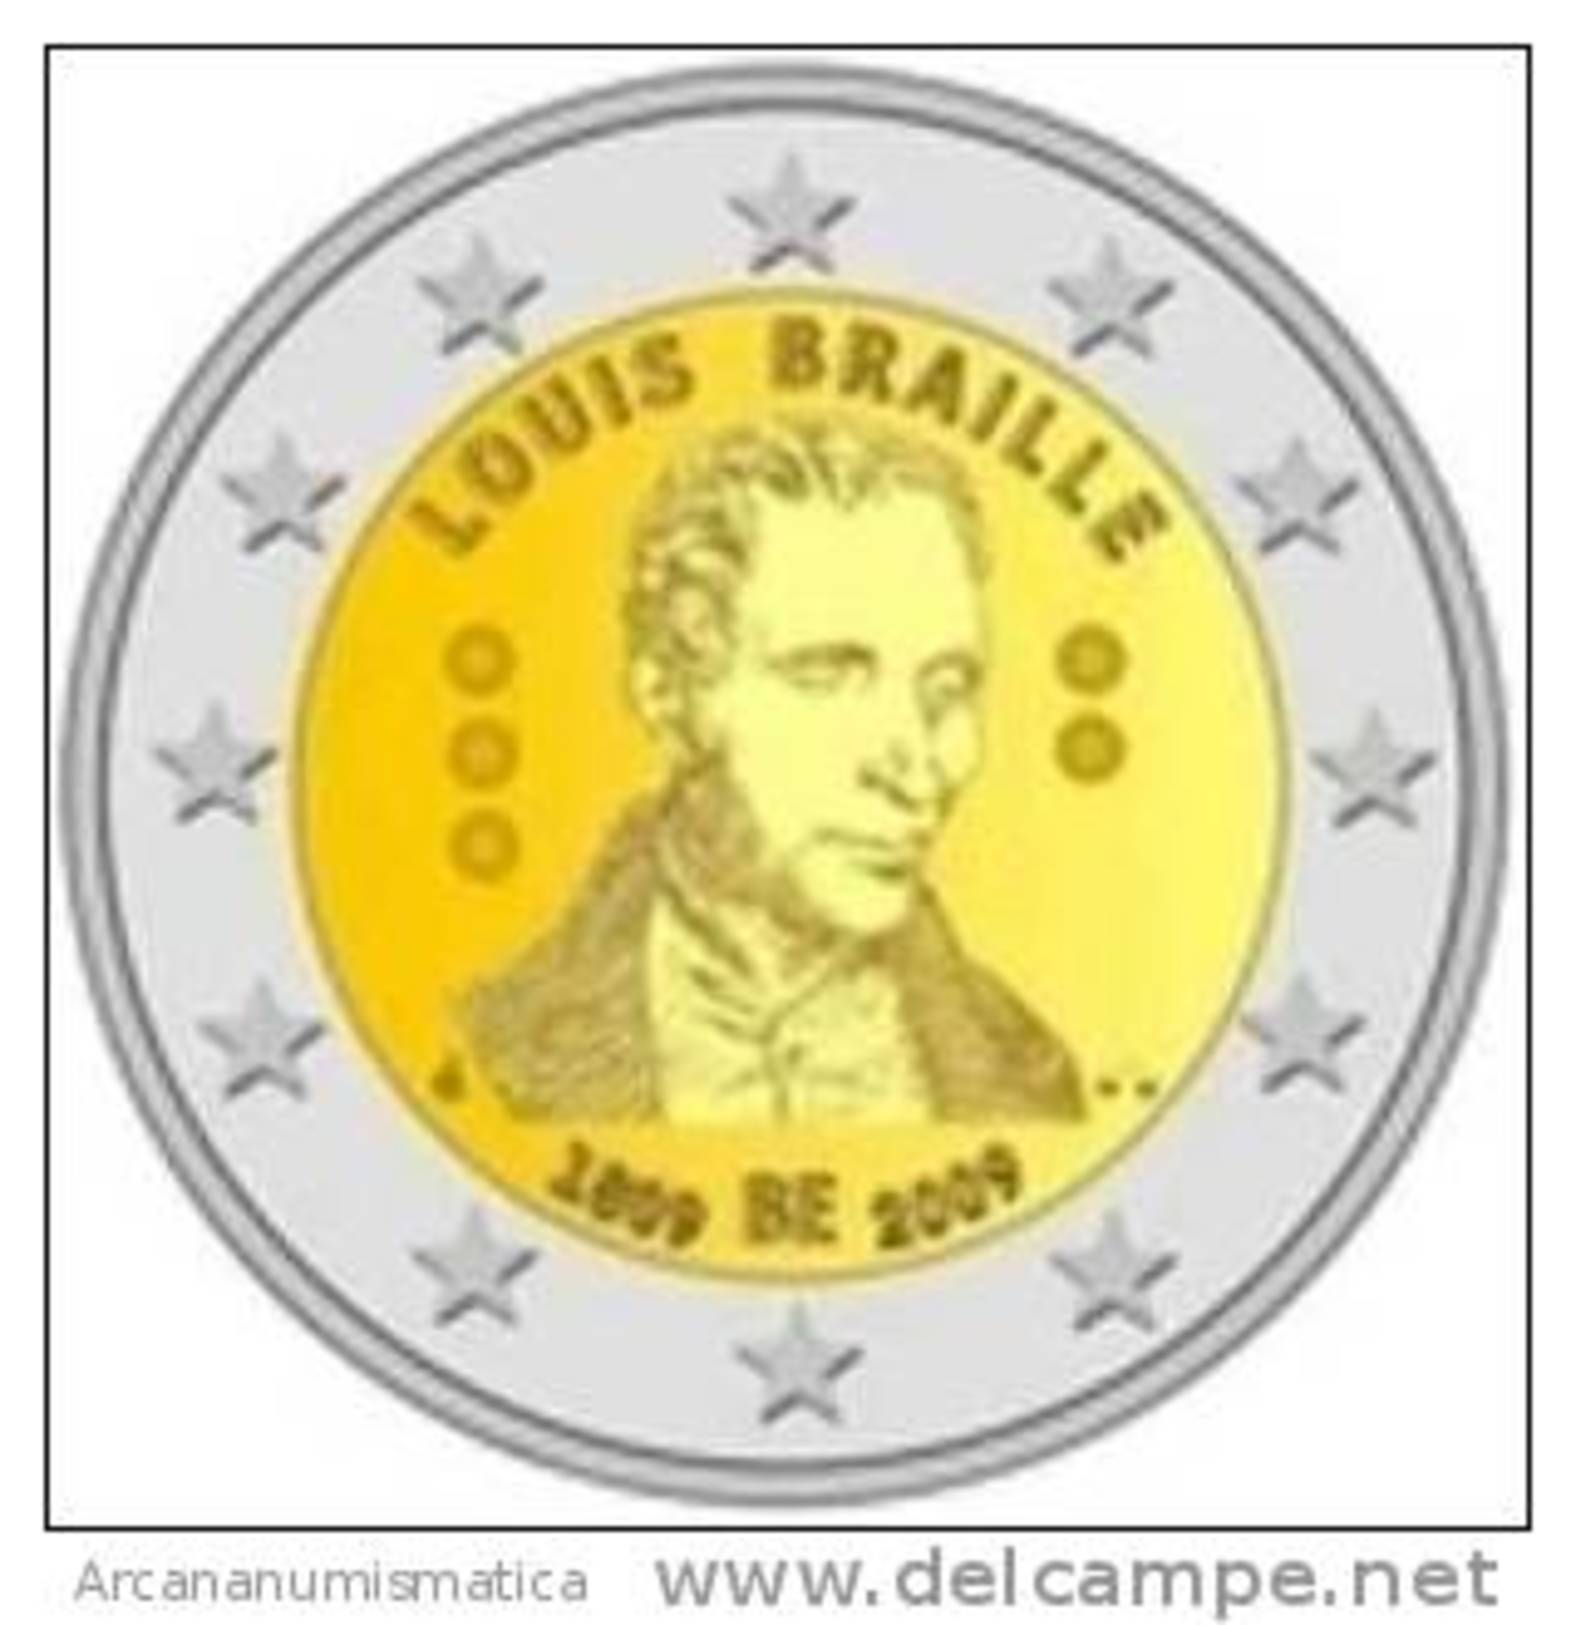 BELGICA  2€  2009  SC/UNC  "LOUIS BRAILLE"  BIMETALICA   DL-7262 - Belgio